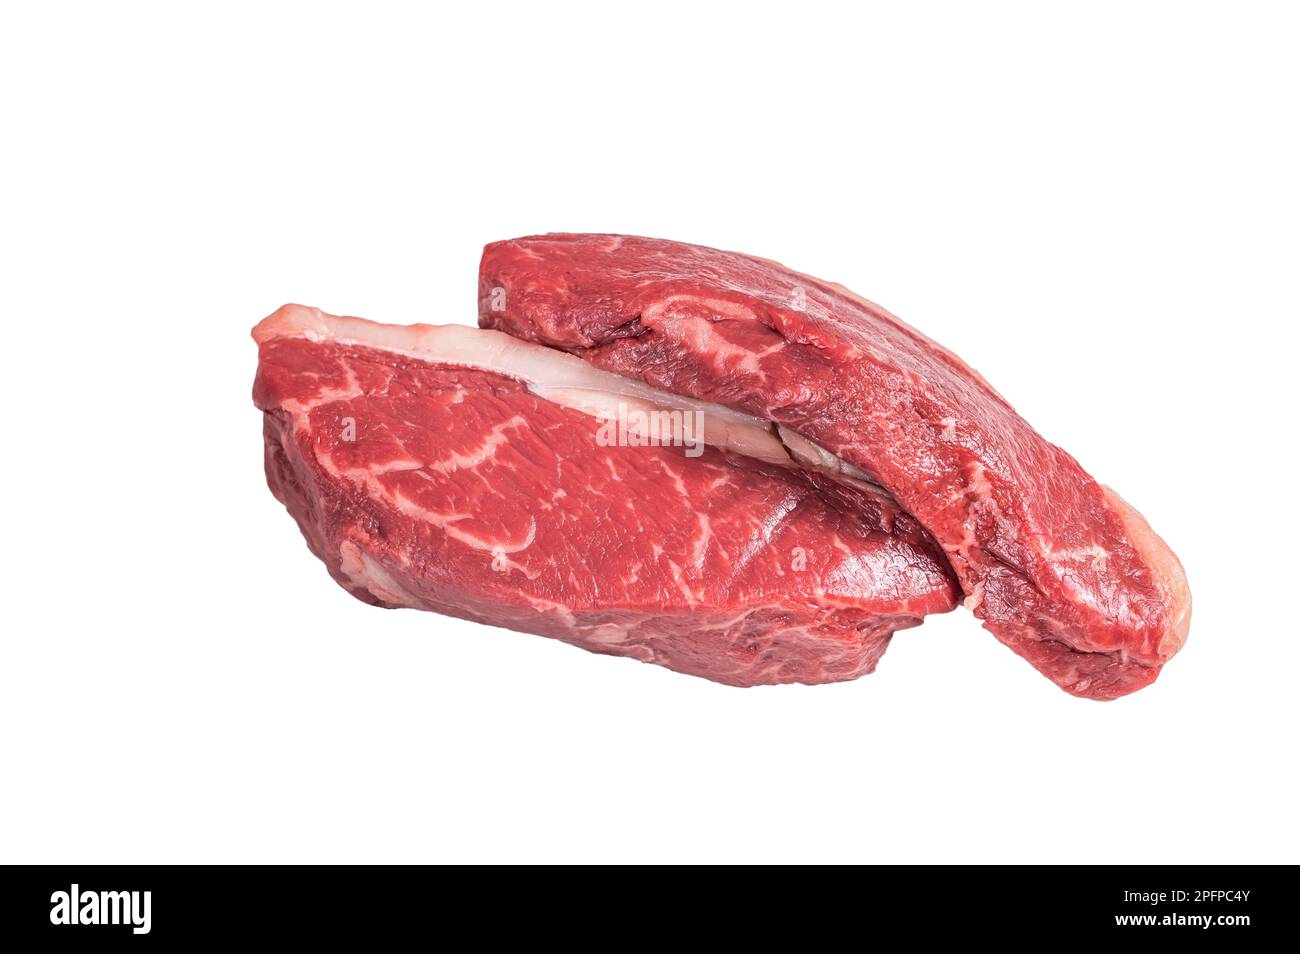 Steak de sirloin de dessus cru, steak de viande de bœuf de dessus de chapeau. Isolé sur fond blanc Banque D'Images